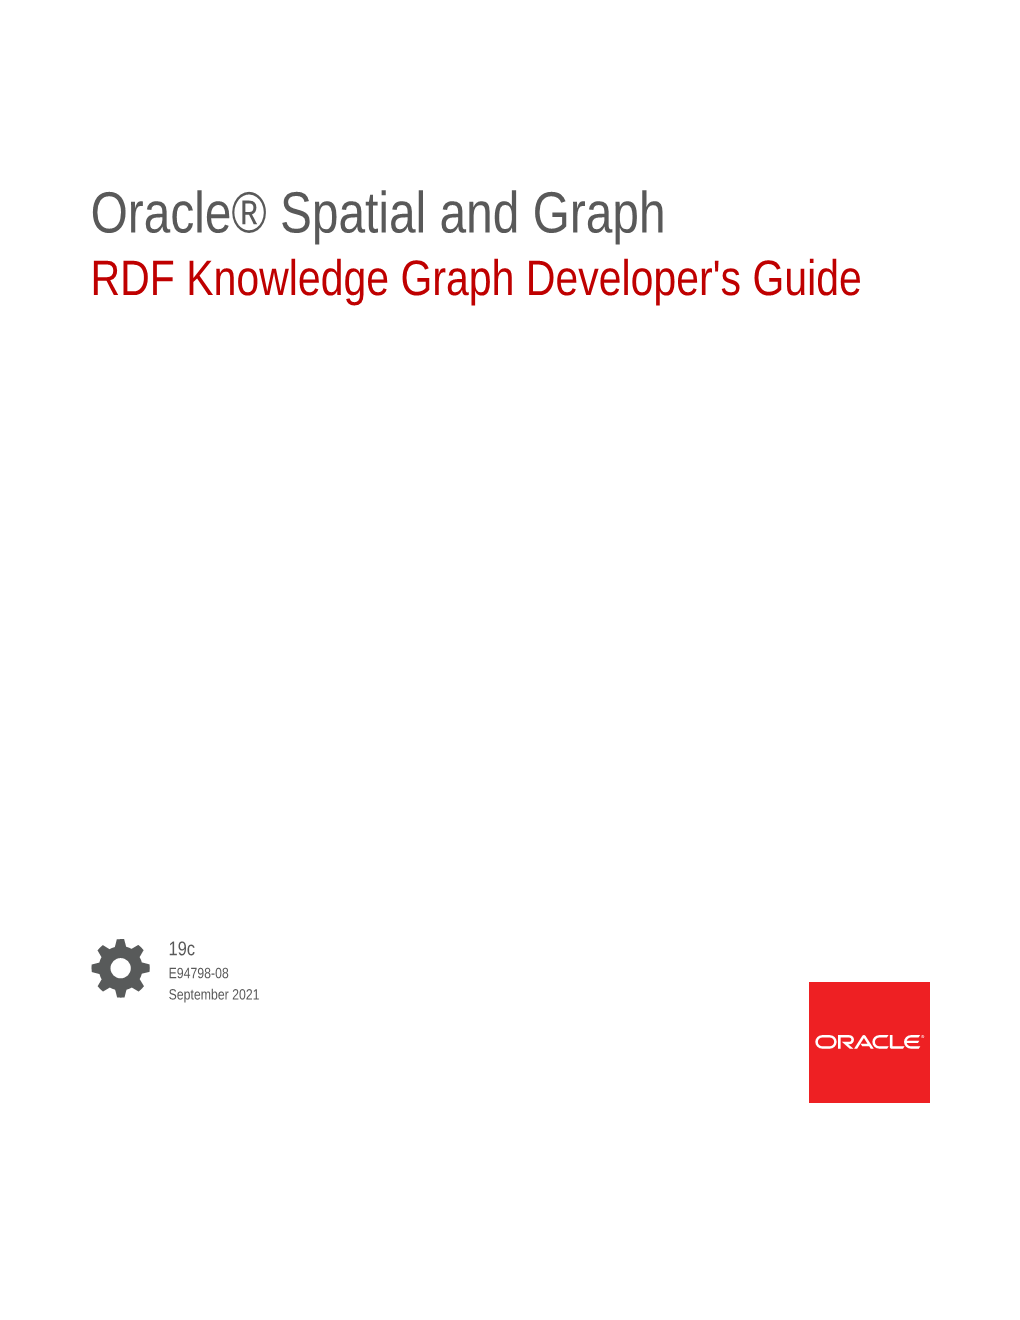 RDF Knowledge Graph Developer's Guide